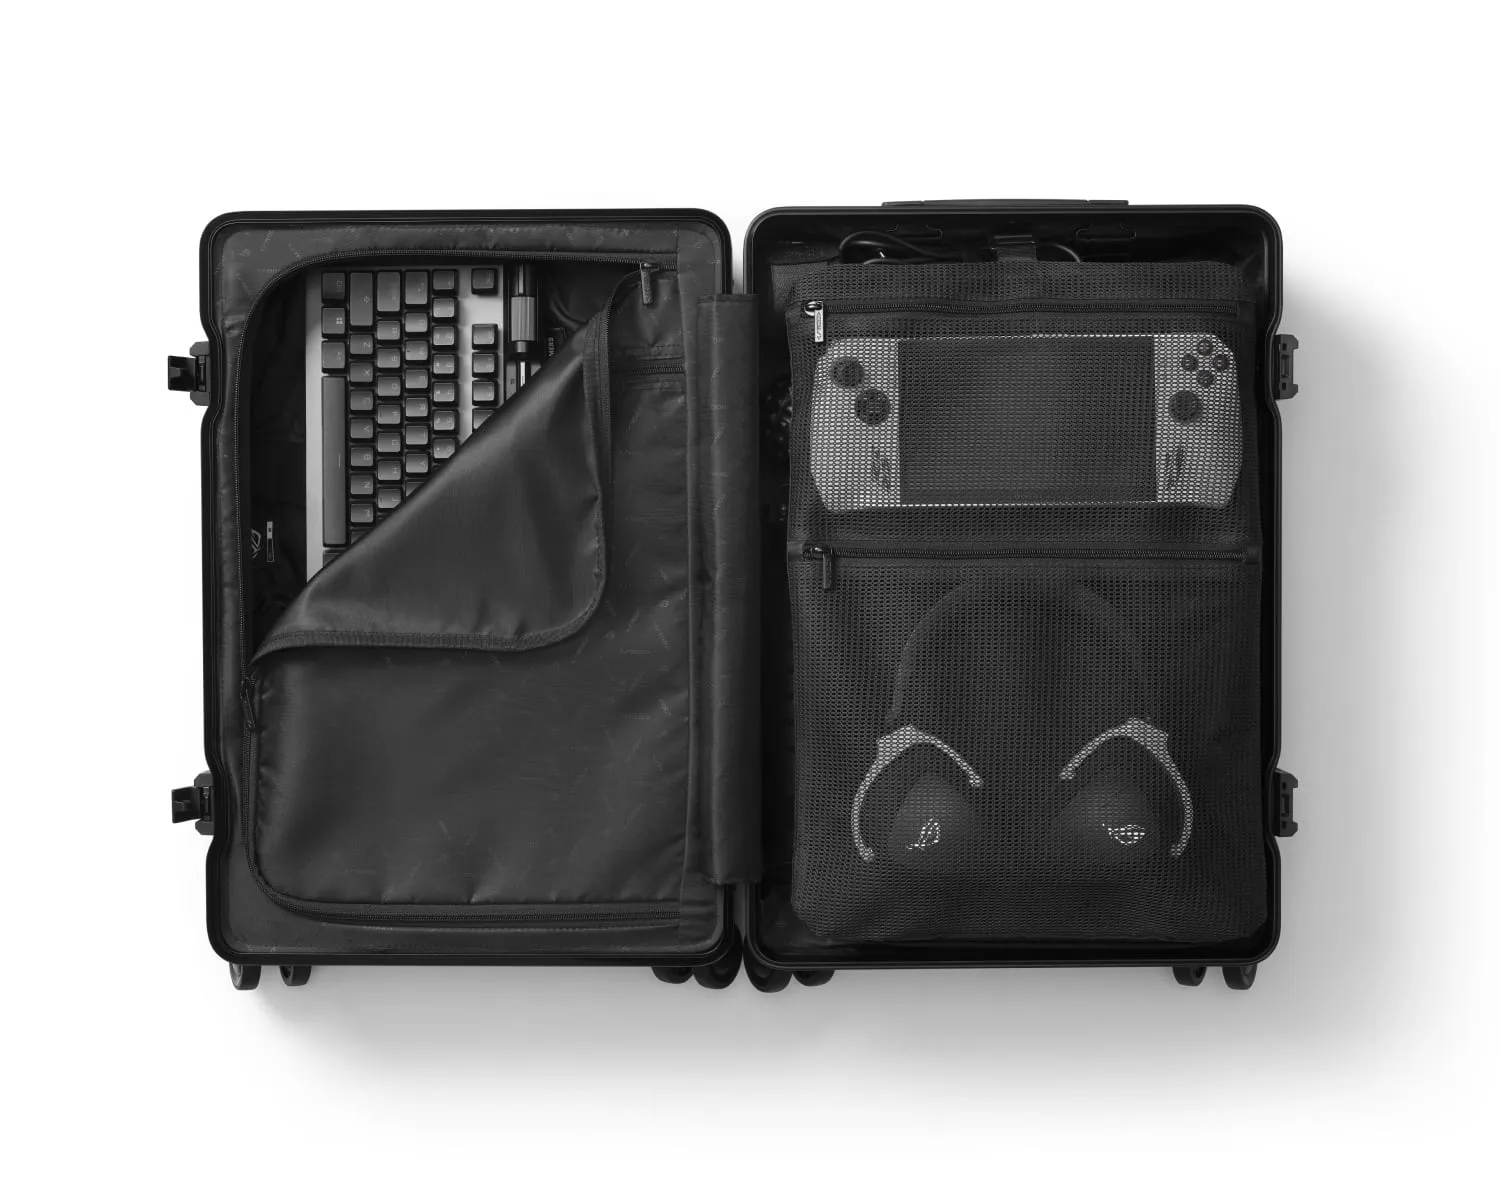 Pohled na otevřené zavazadlo ROG SLASH Hard Case, uvnitř jsou vidět klávesnice, sluchátka a handheld ROG Ally